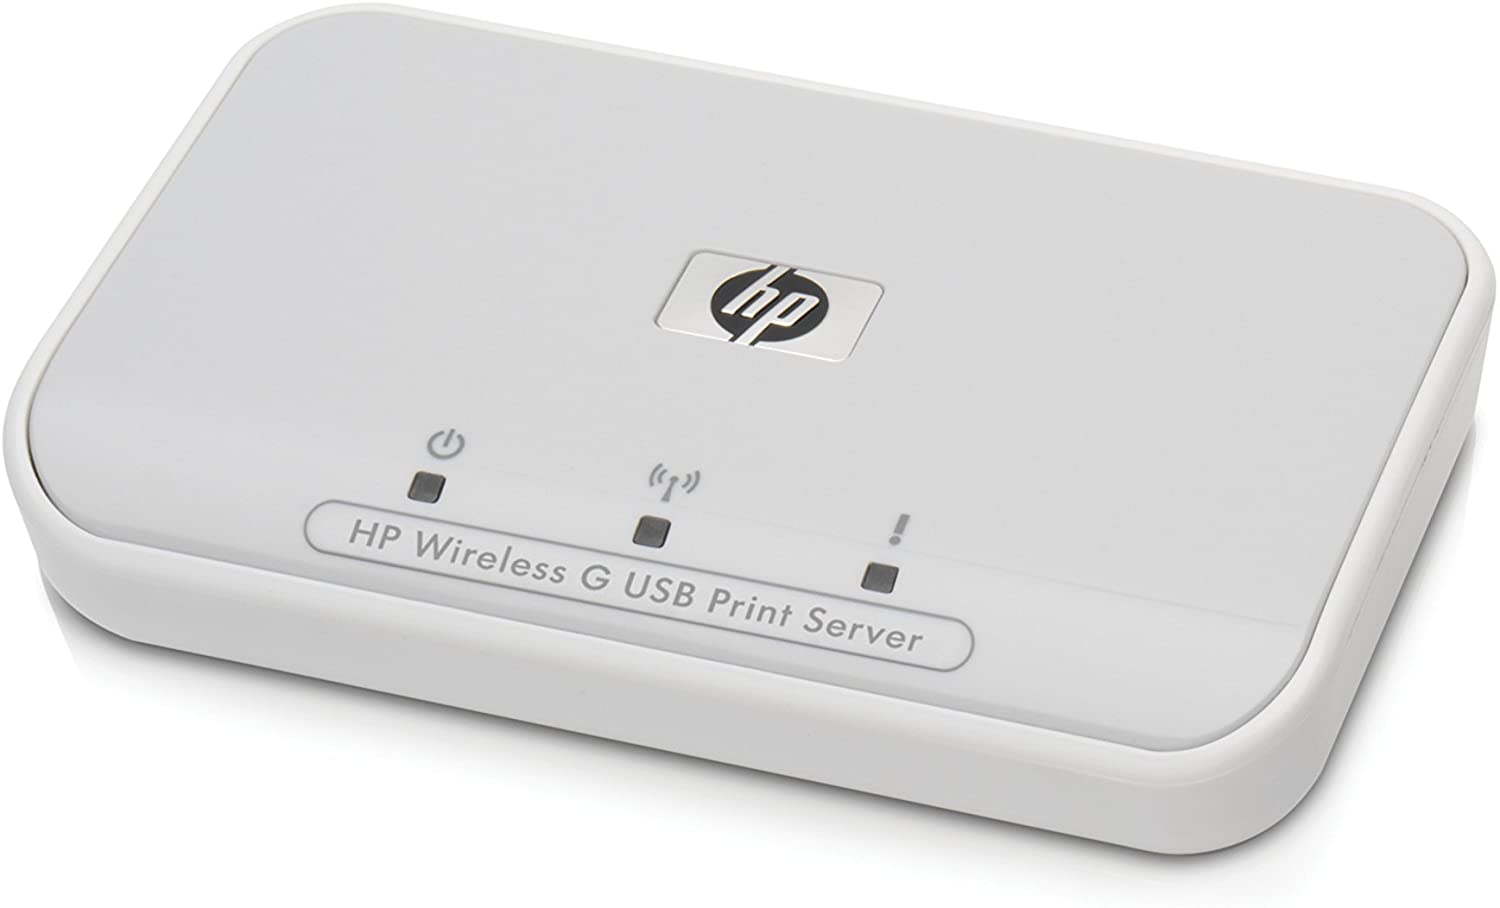 hp wireless network g usb print host mac